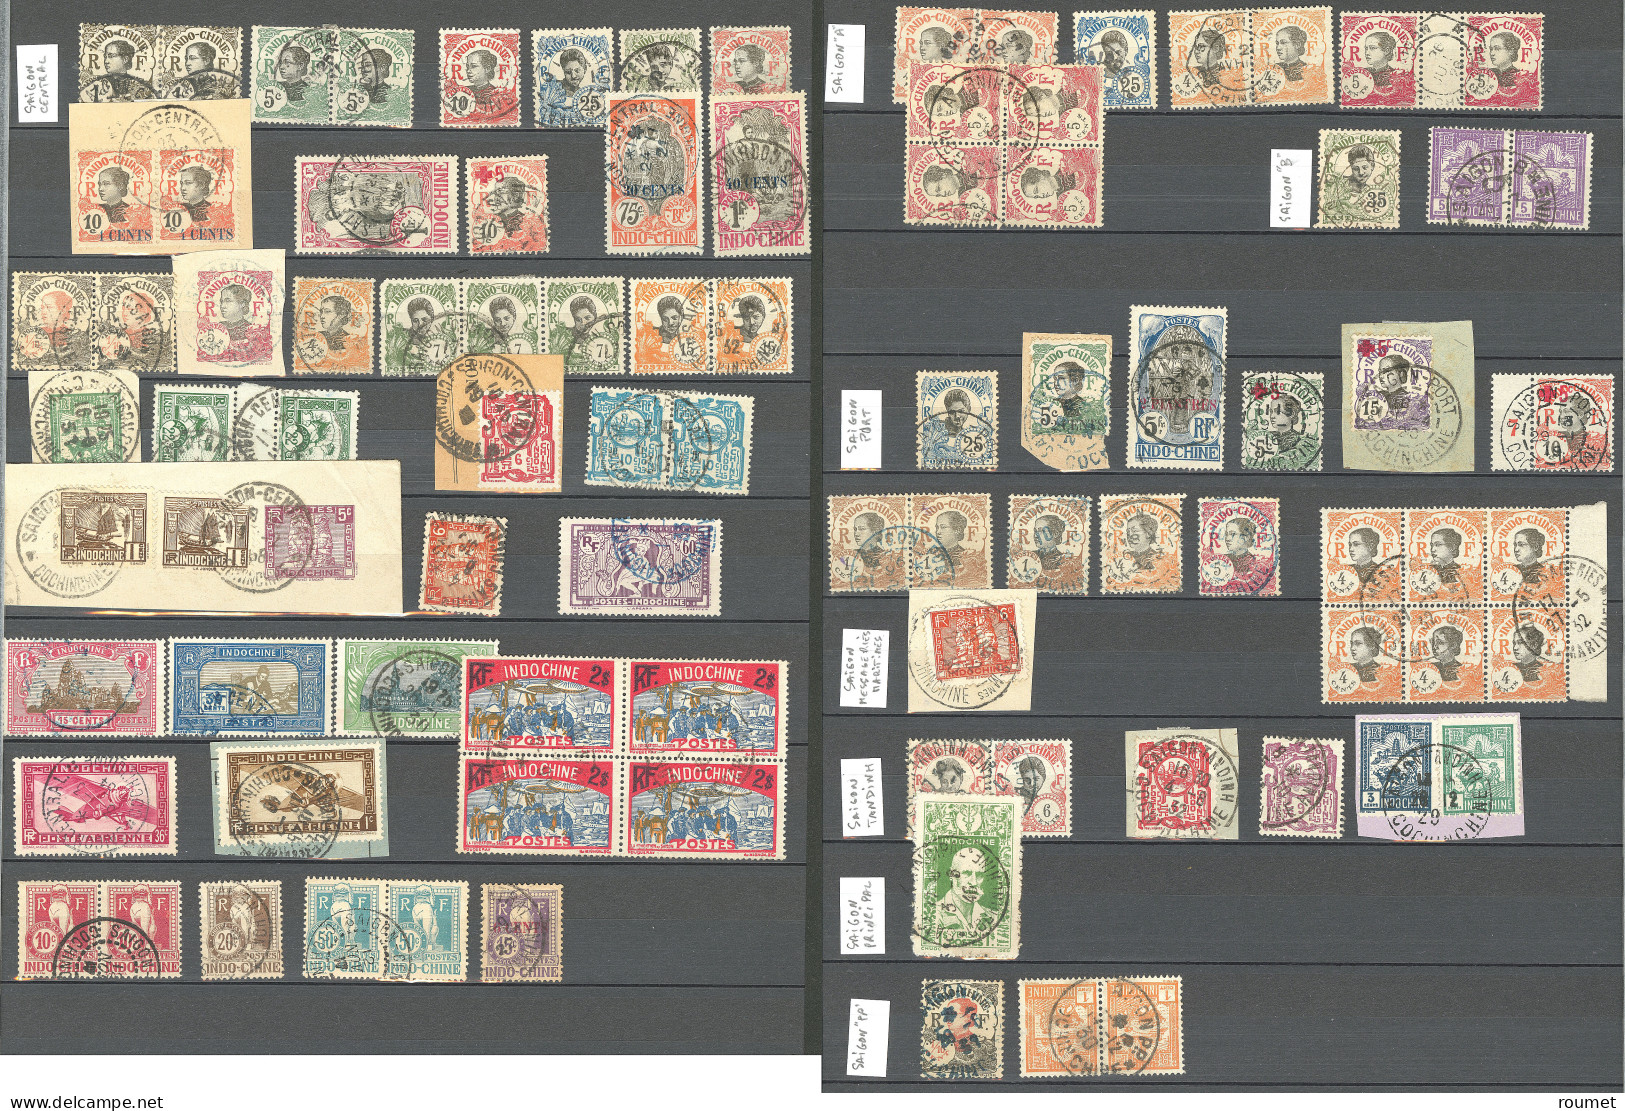 Collection. 1907-1945, obl choisies de petits bureaux de chine entre Anhoa et Xuanloc. - TB ou B